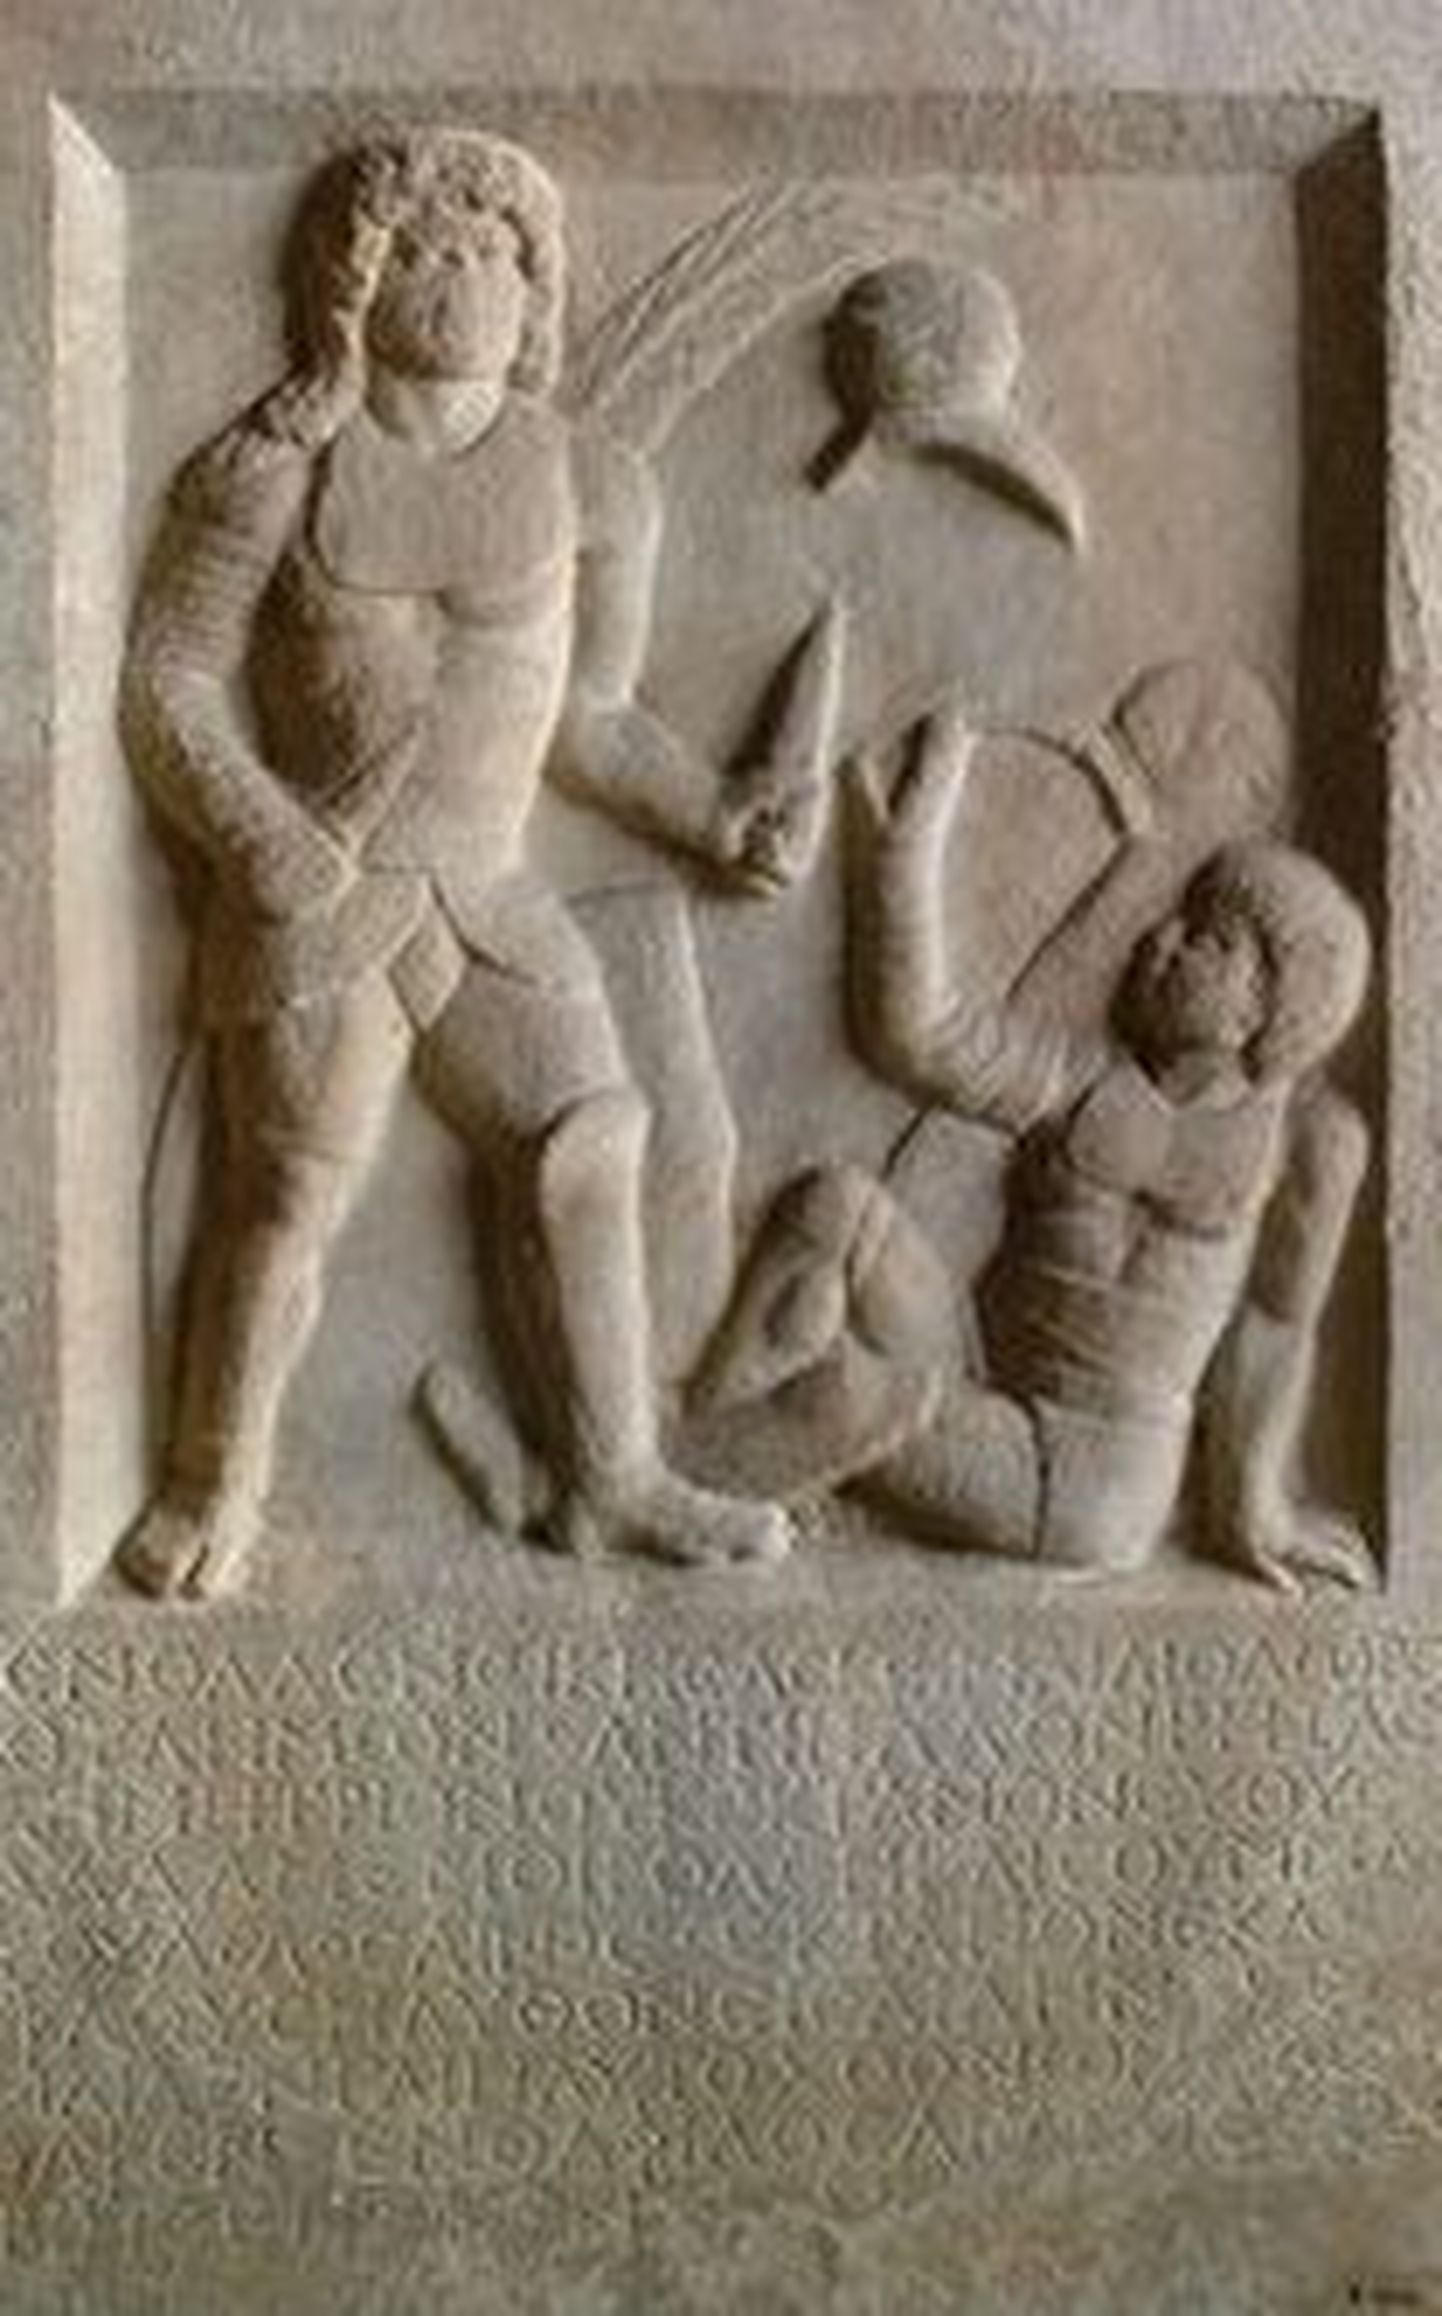 Teadlane lahendas gladiaatori hauakivi mõistatuse